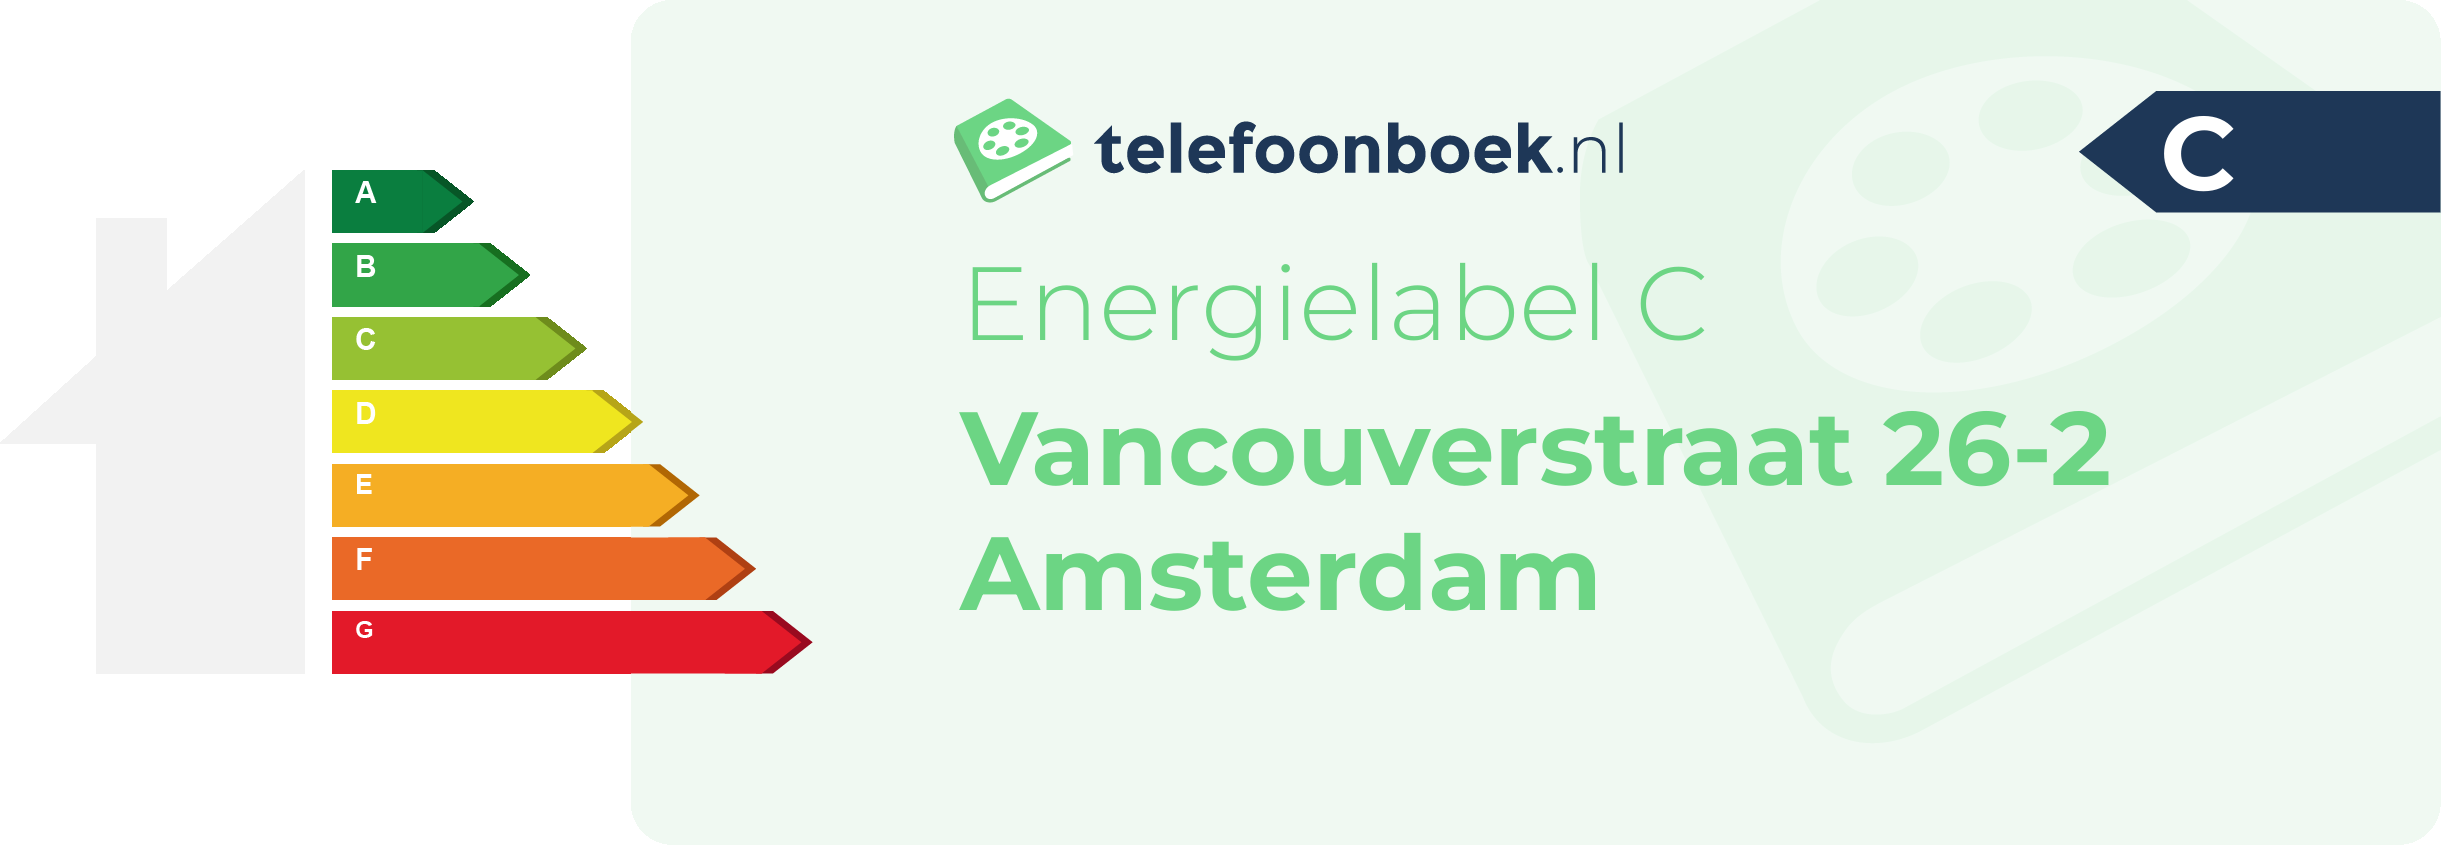 Energielabel Vancouverstraat 26-2 Amsterdam